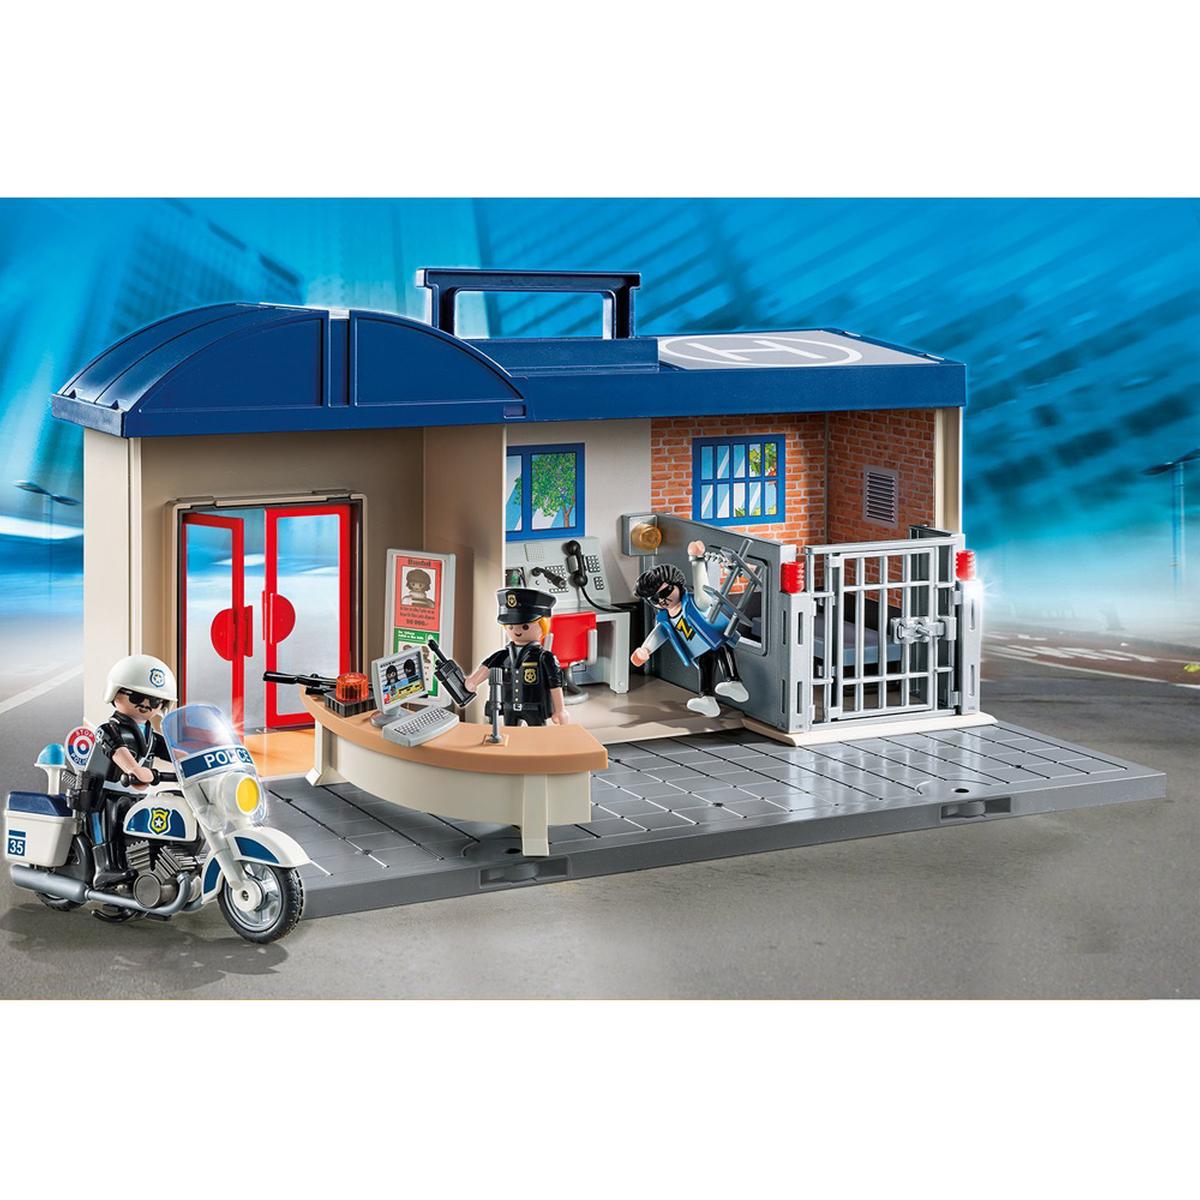 Playmobil - Estación de Policía Maletín - 5299 | City Action Policia |  Toys"R"Us España